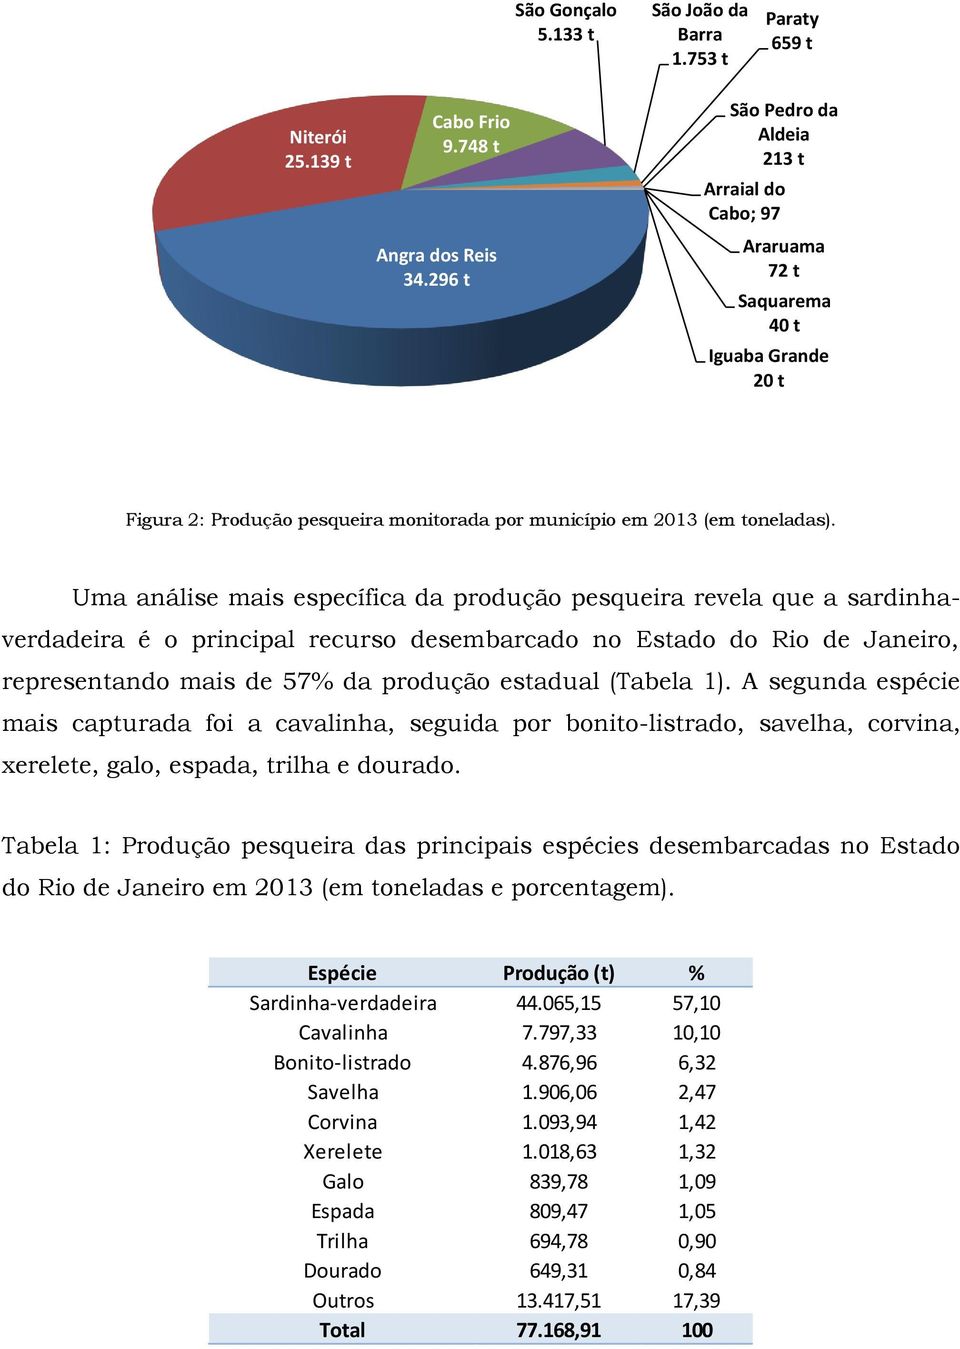 Uma análise mais específica da produção pesqueira revela que a sardinhaverdadeira é o principal recurso desembarcado no Estado do Rio de Janeiro, representando mais de 57% da produção estadual